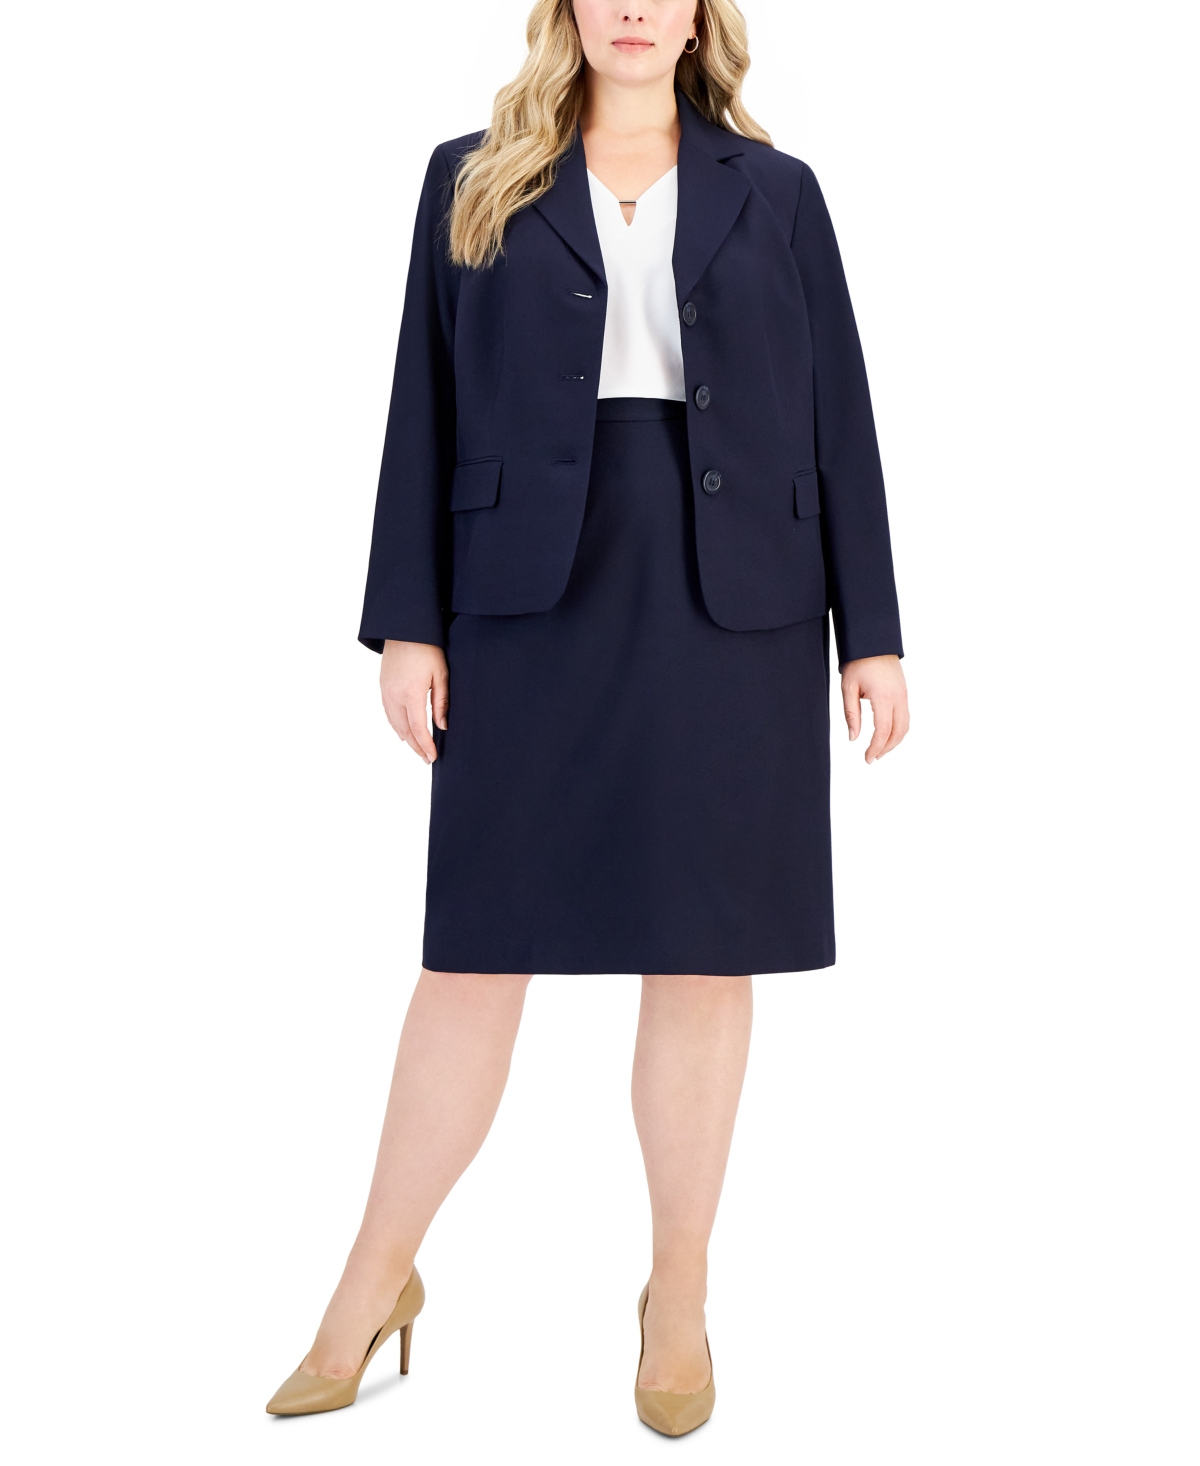 Plus Size Button-Front Pencil Skirt Suit - Navy